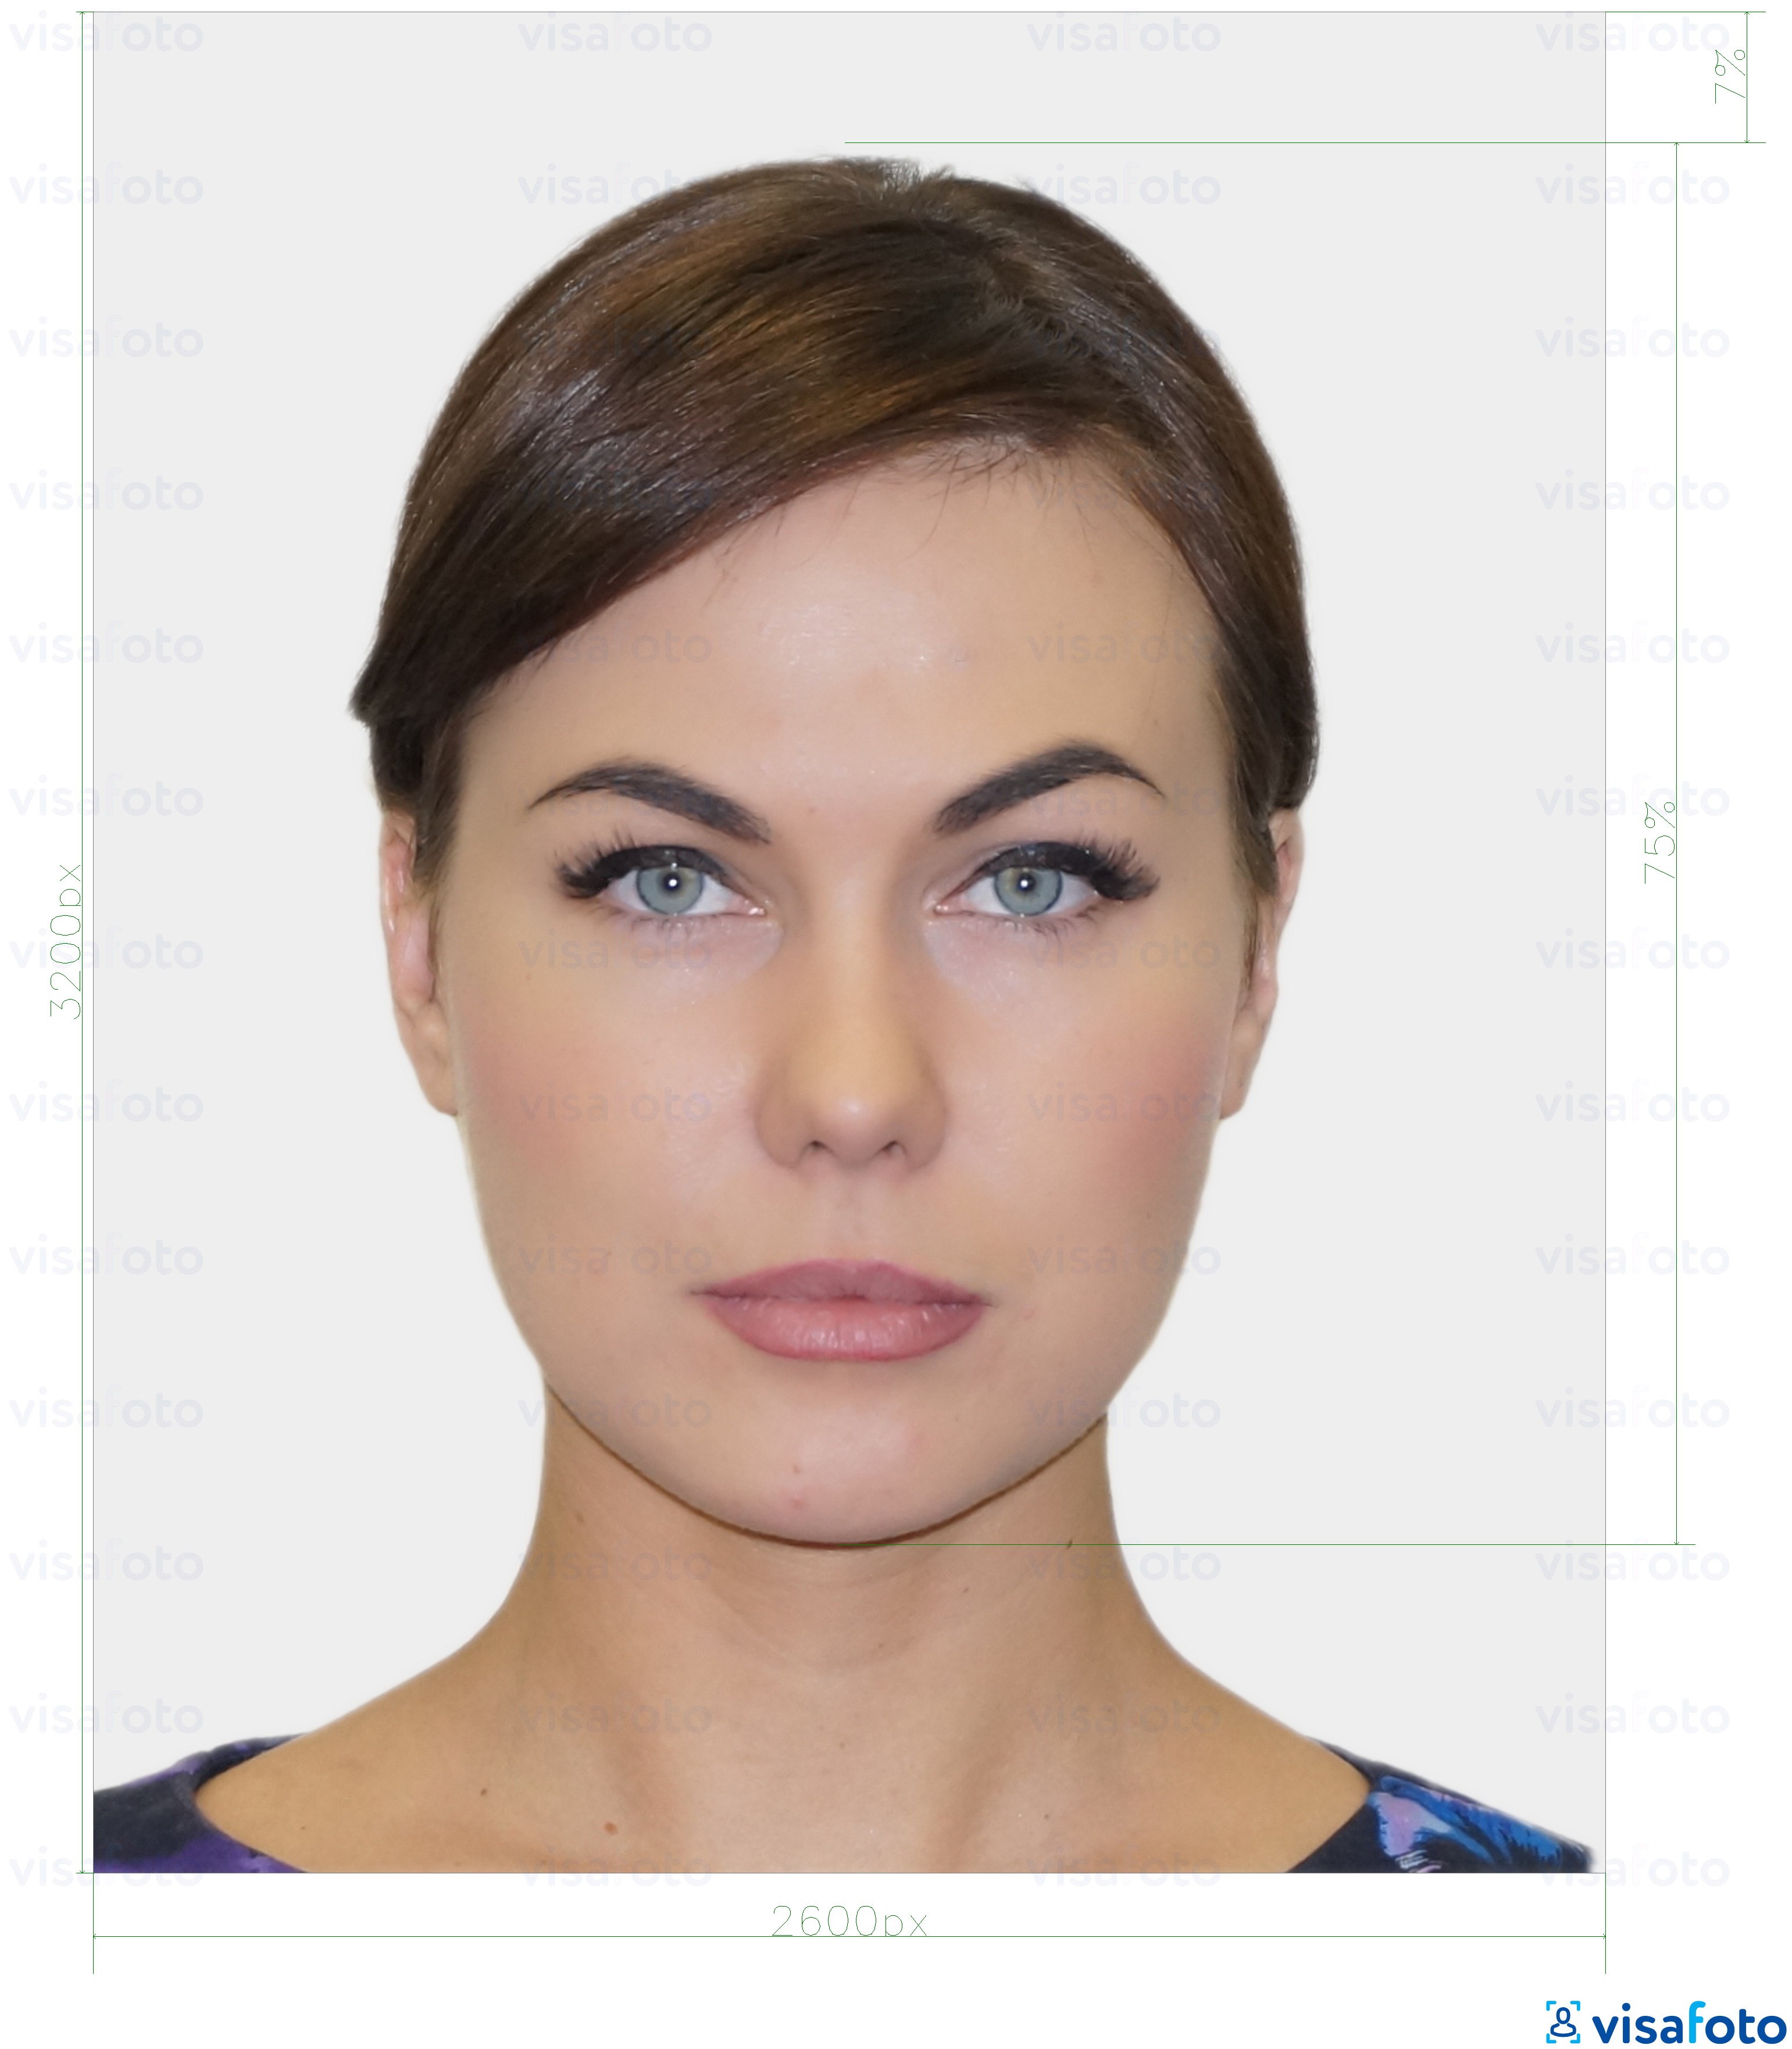 Exemplu de fotografie pentru Cartea de identitate digitală rezidentă din Estonia 1300x1600 pixeli cu aceeași dimensiune indicată